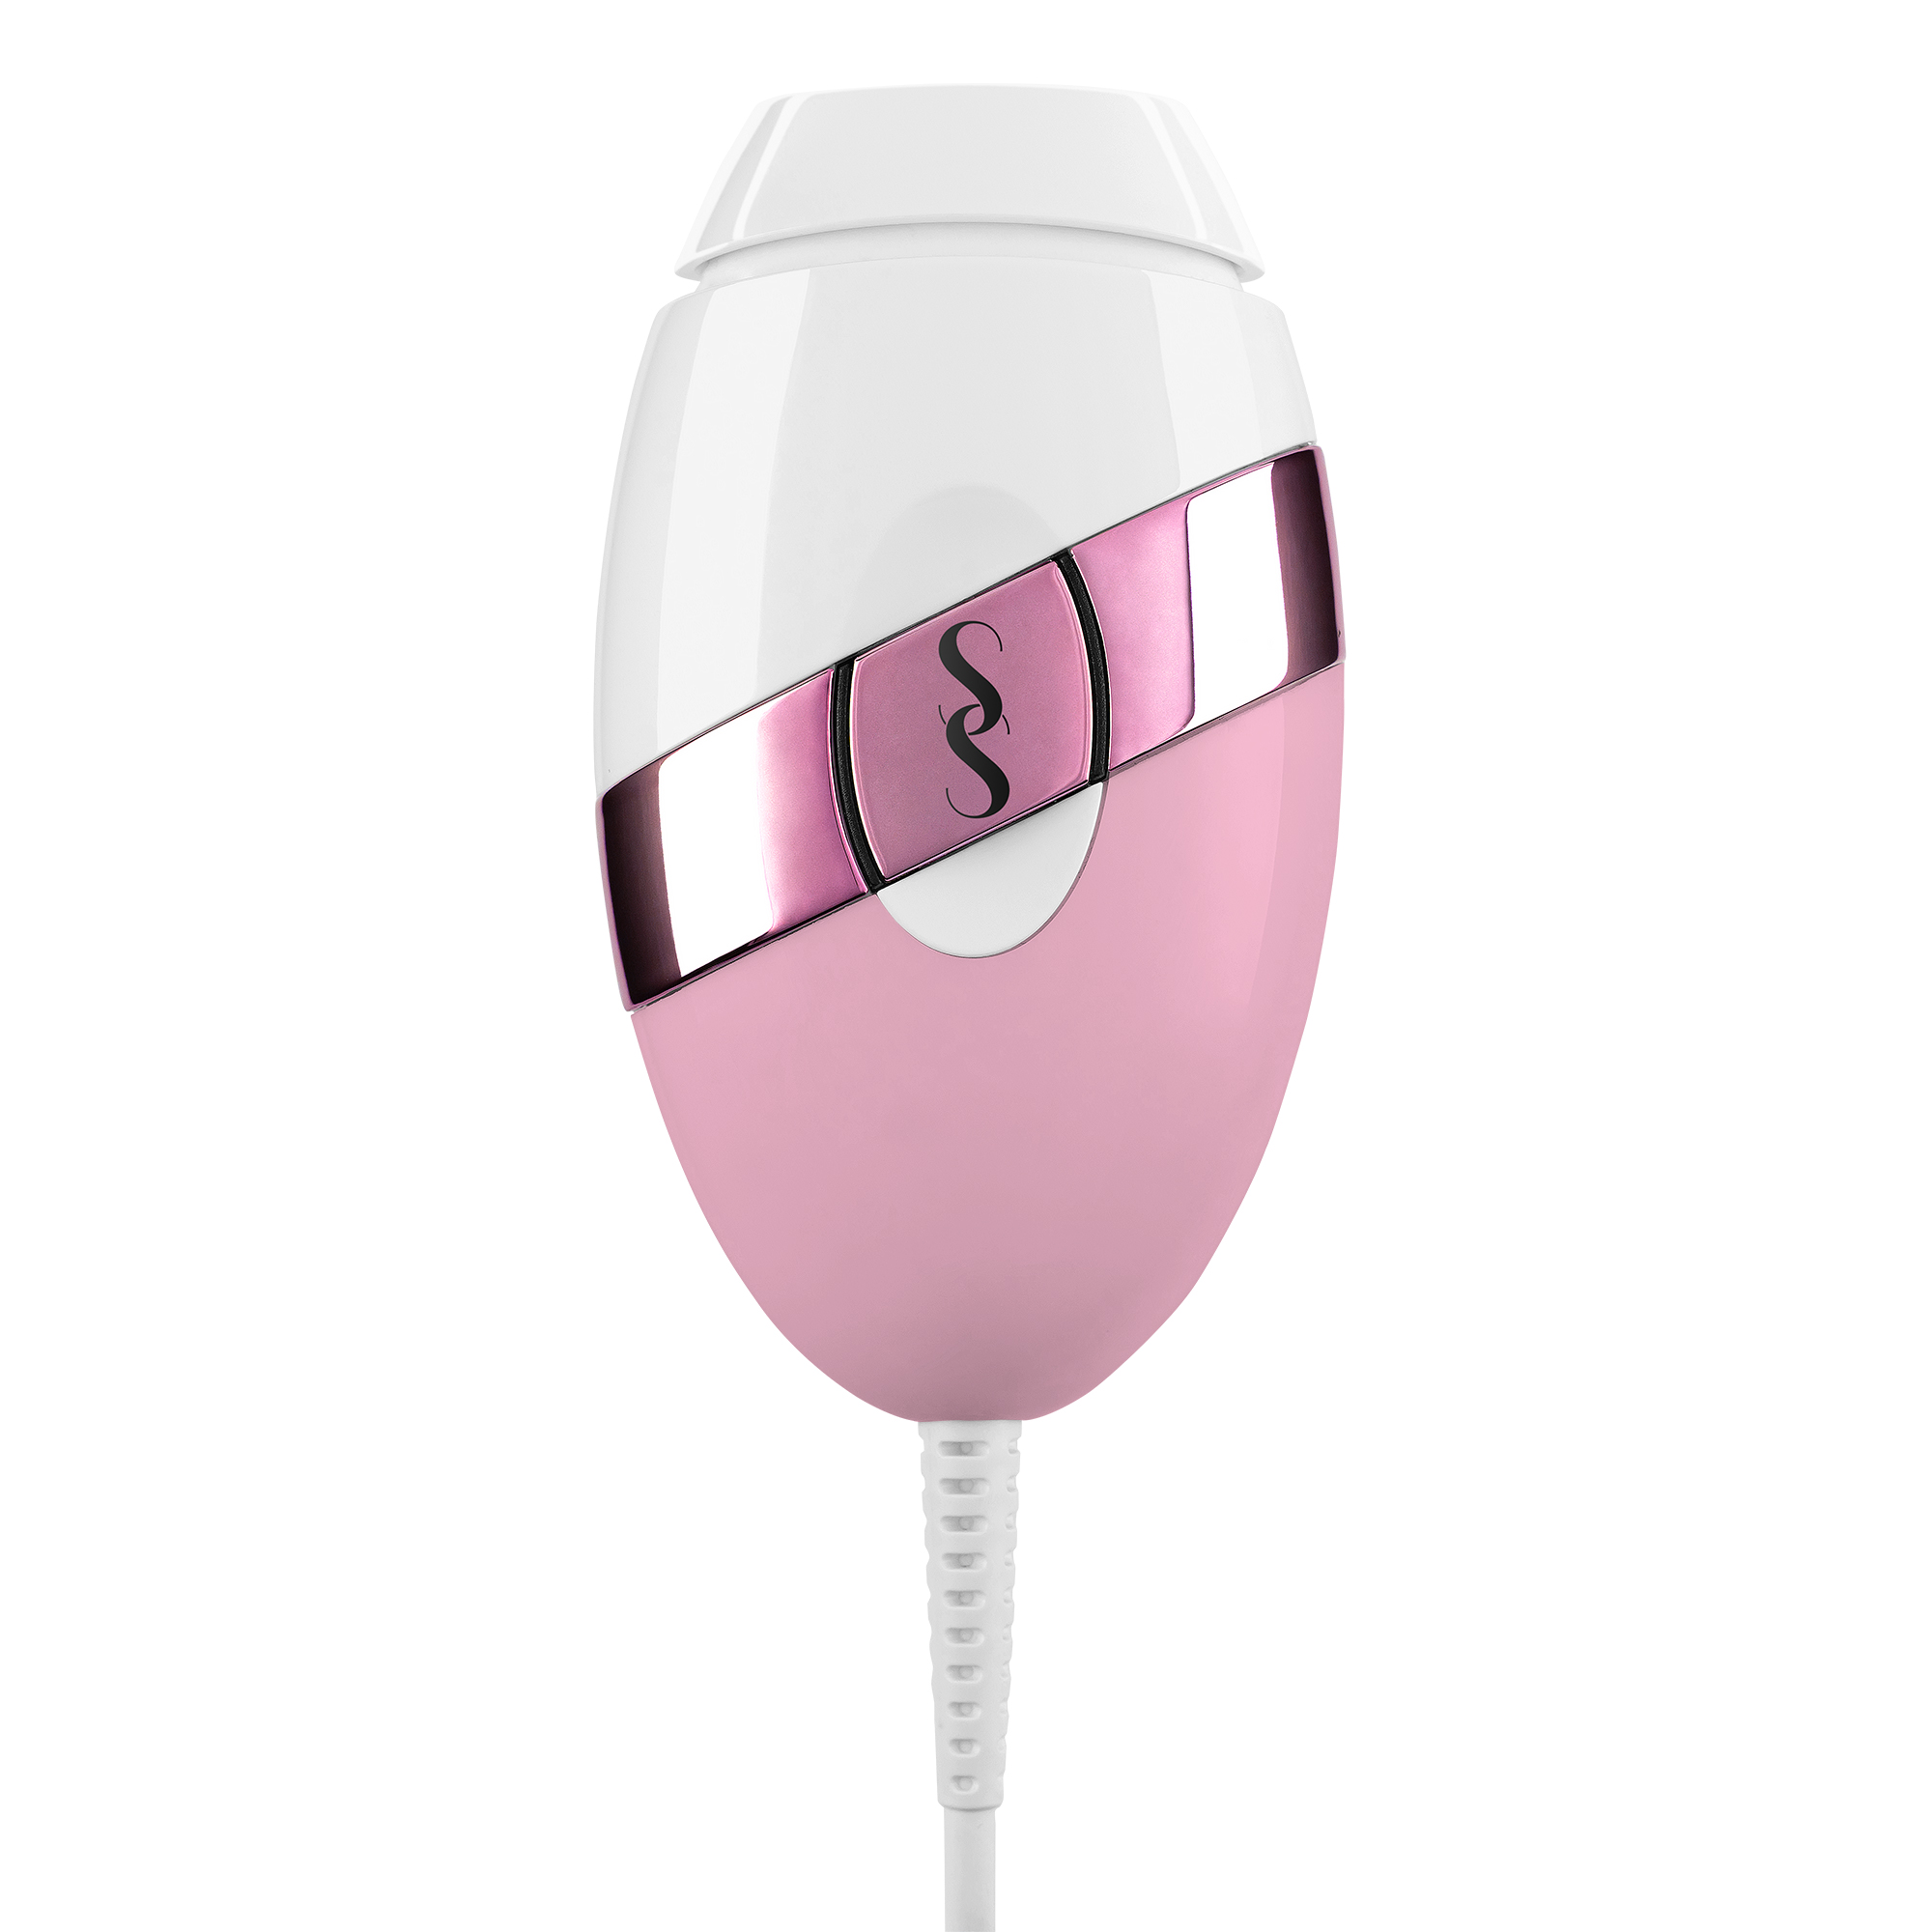 Smoothskin Bare+ Pink - Máy triệt lông cao cấp | Không giới hạn xung bắn, dùng được cho toàn thân, 100 nháy mỗi phút |